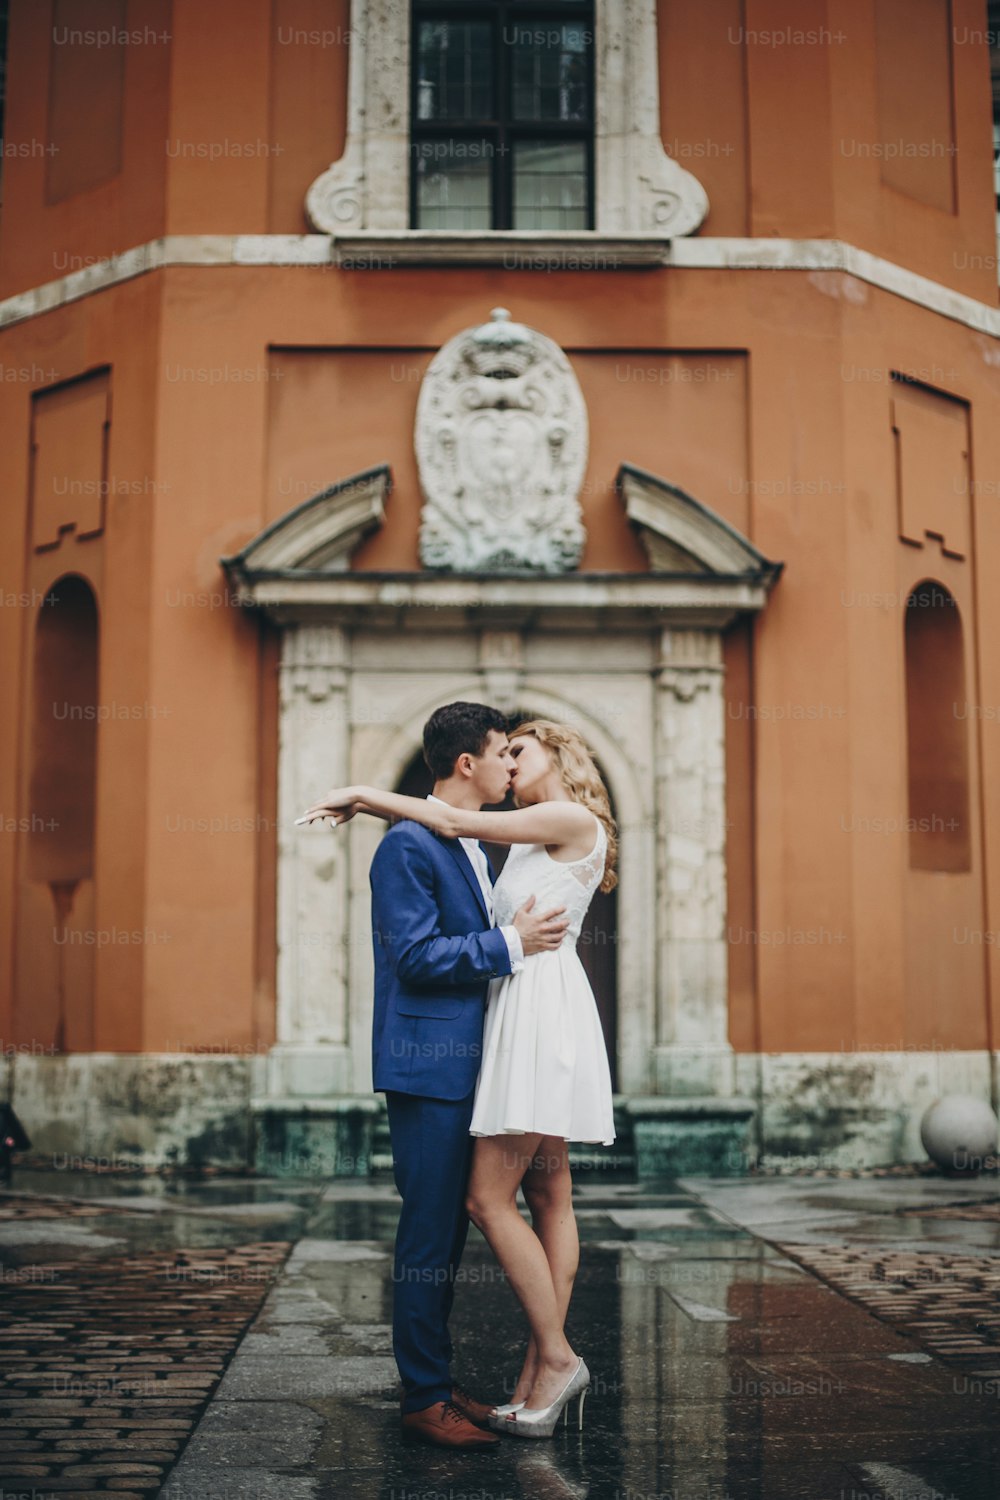 Casal elegante beijando na rua da cidade europeia no fundo da arquitetura antiga. Noiva e noivo da moda apaixonados curtindo o dia, abraçados na cidade. Viajando juntos na Europa